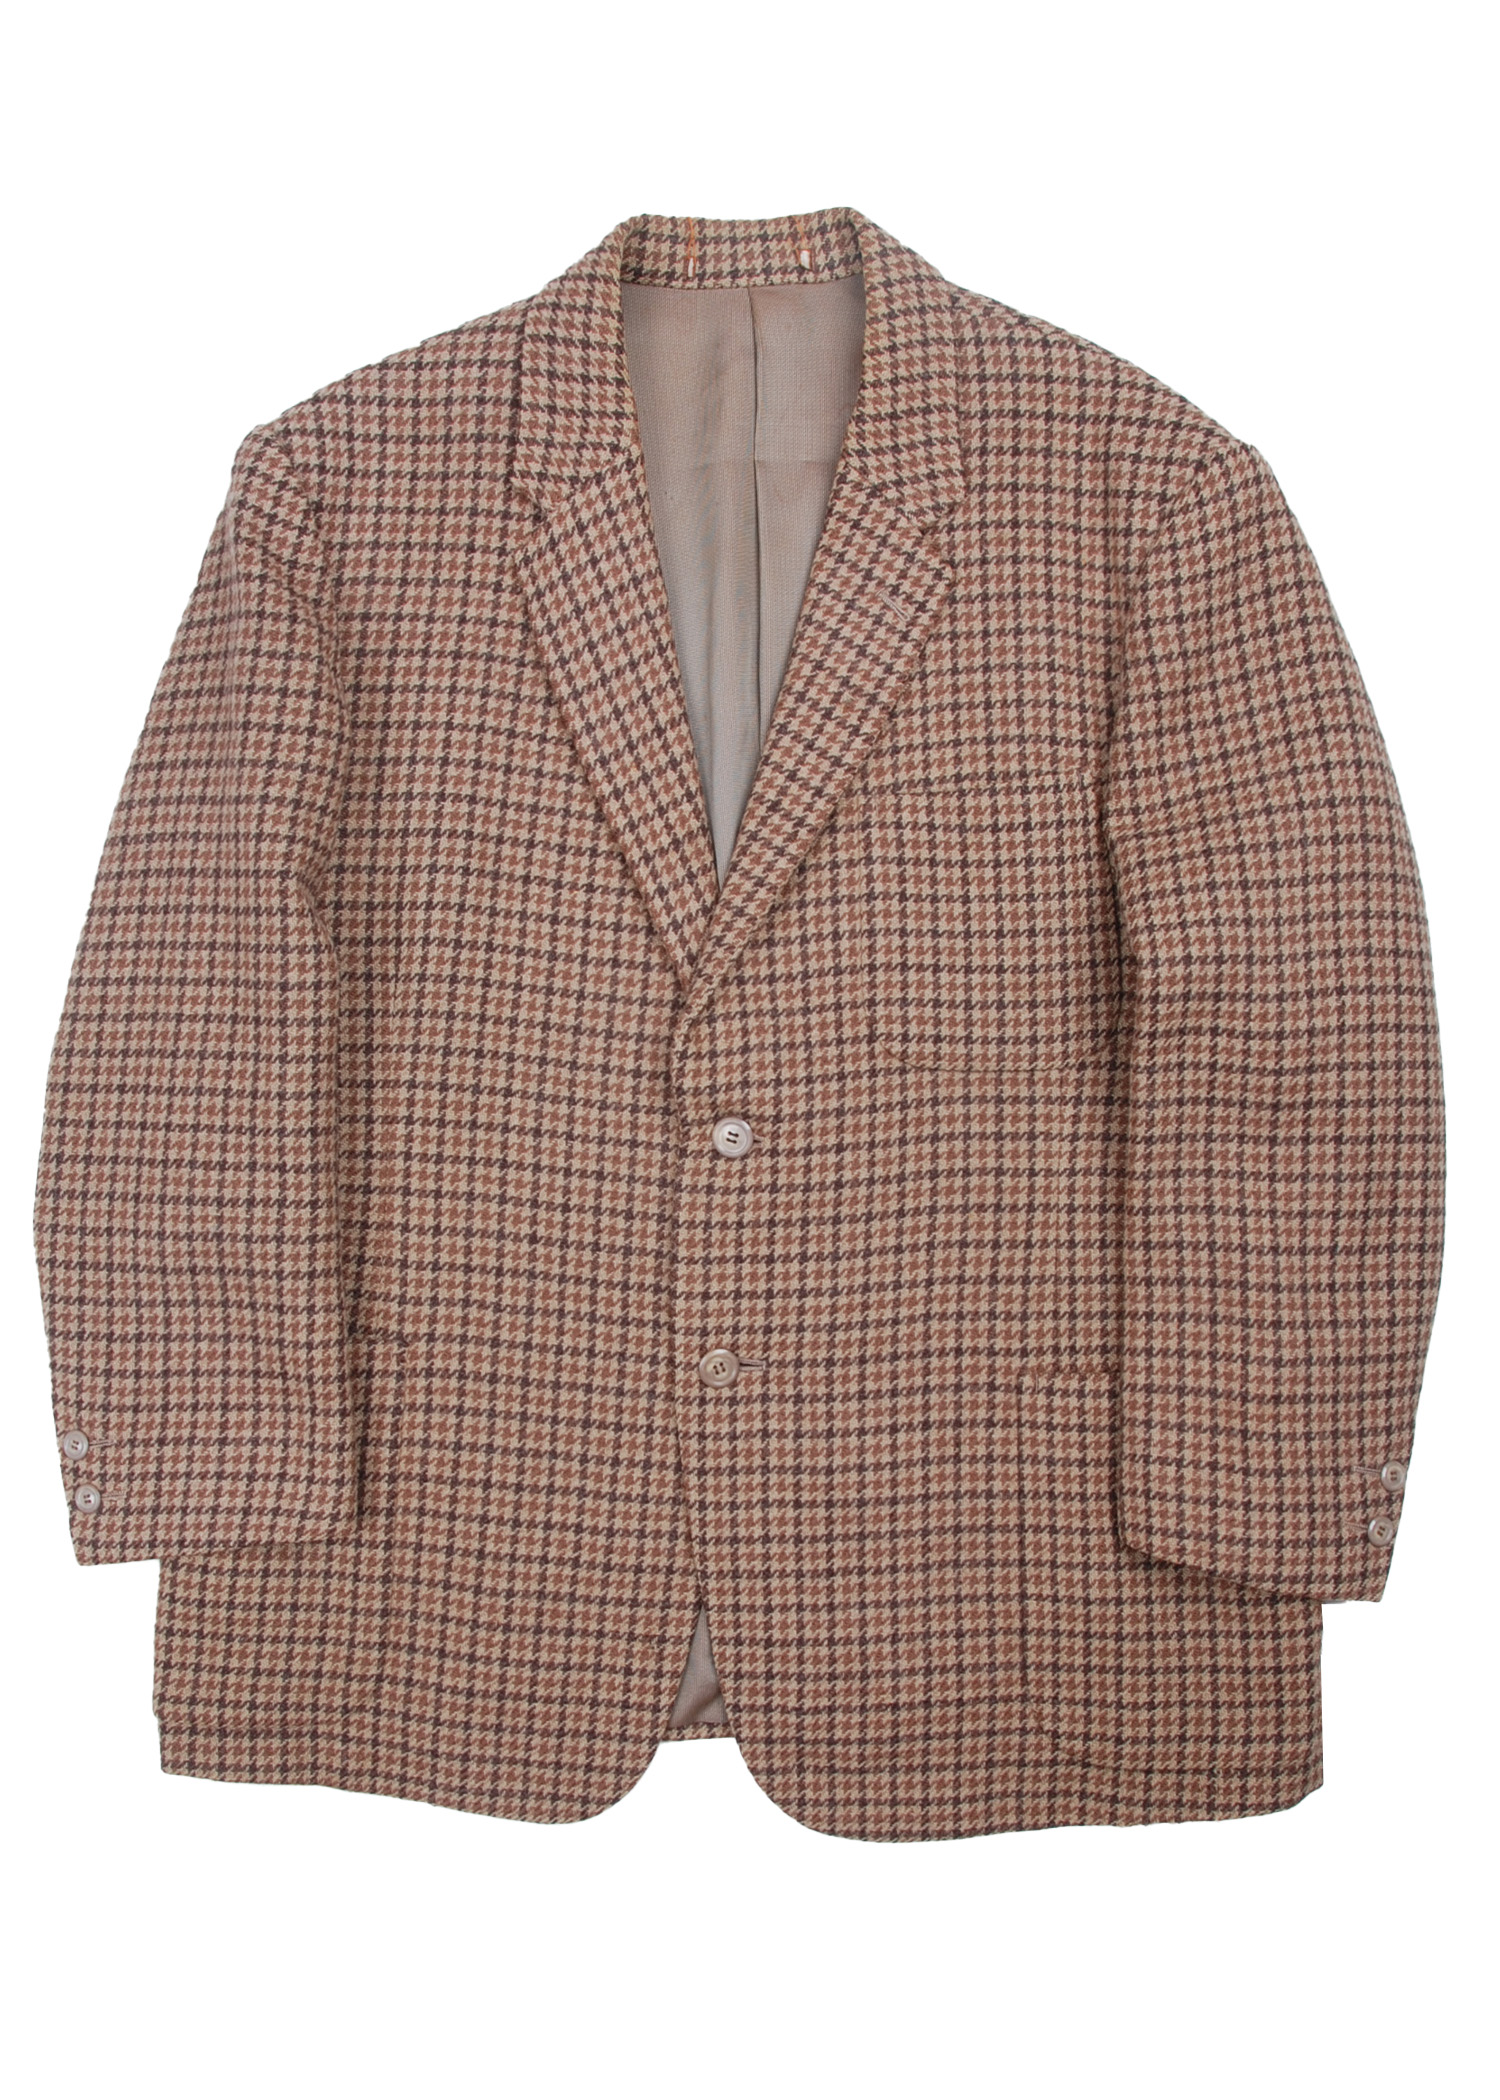 select vintage : tweed jacket